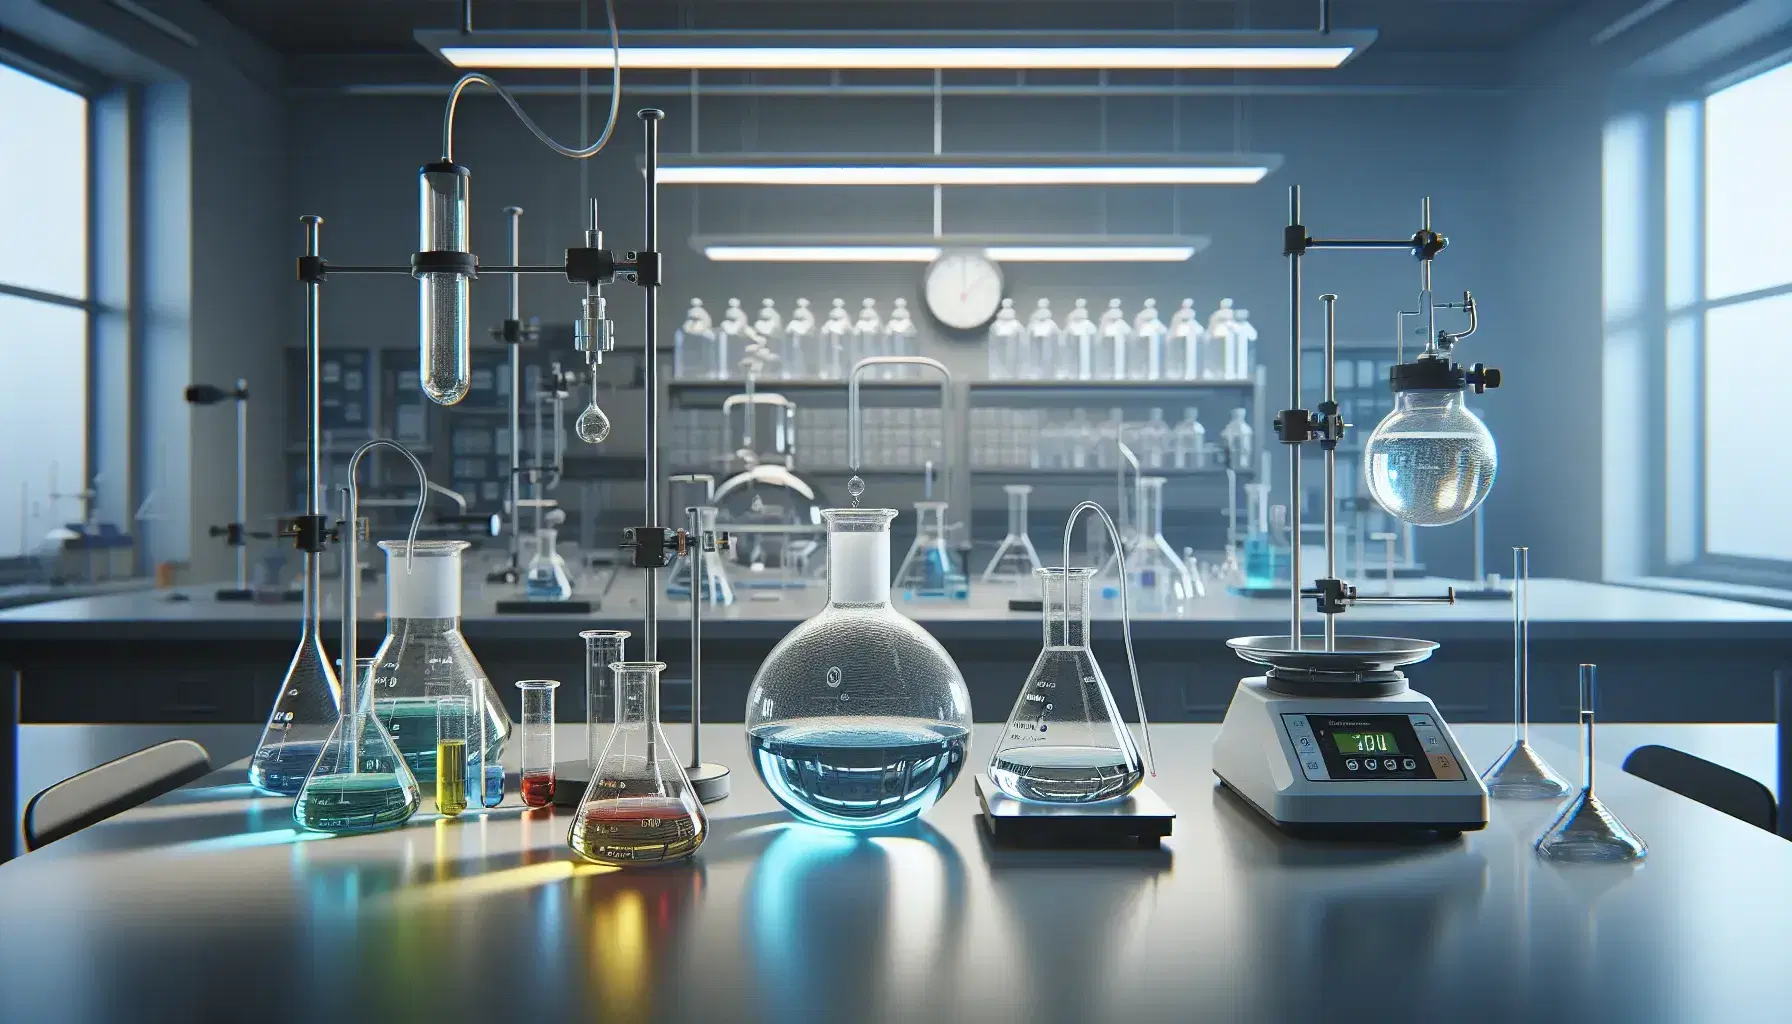 Laboratorio de química con matraces Erlenmeyer de líquidos coloridos, condensador de reflujo y balanza analítica, con un científico trabajando al fondo.